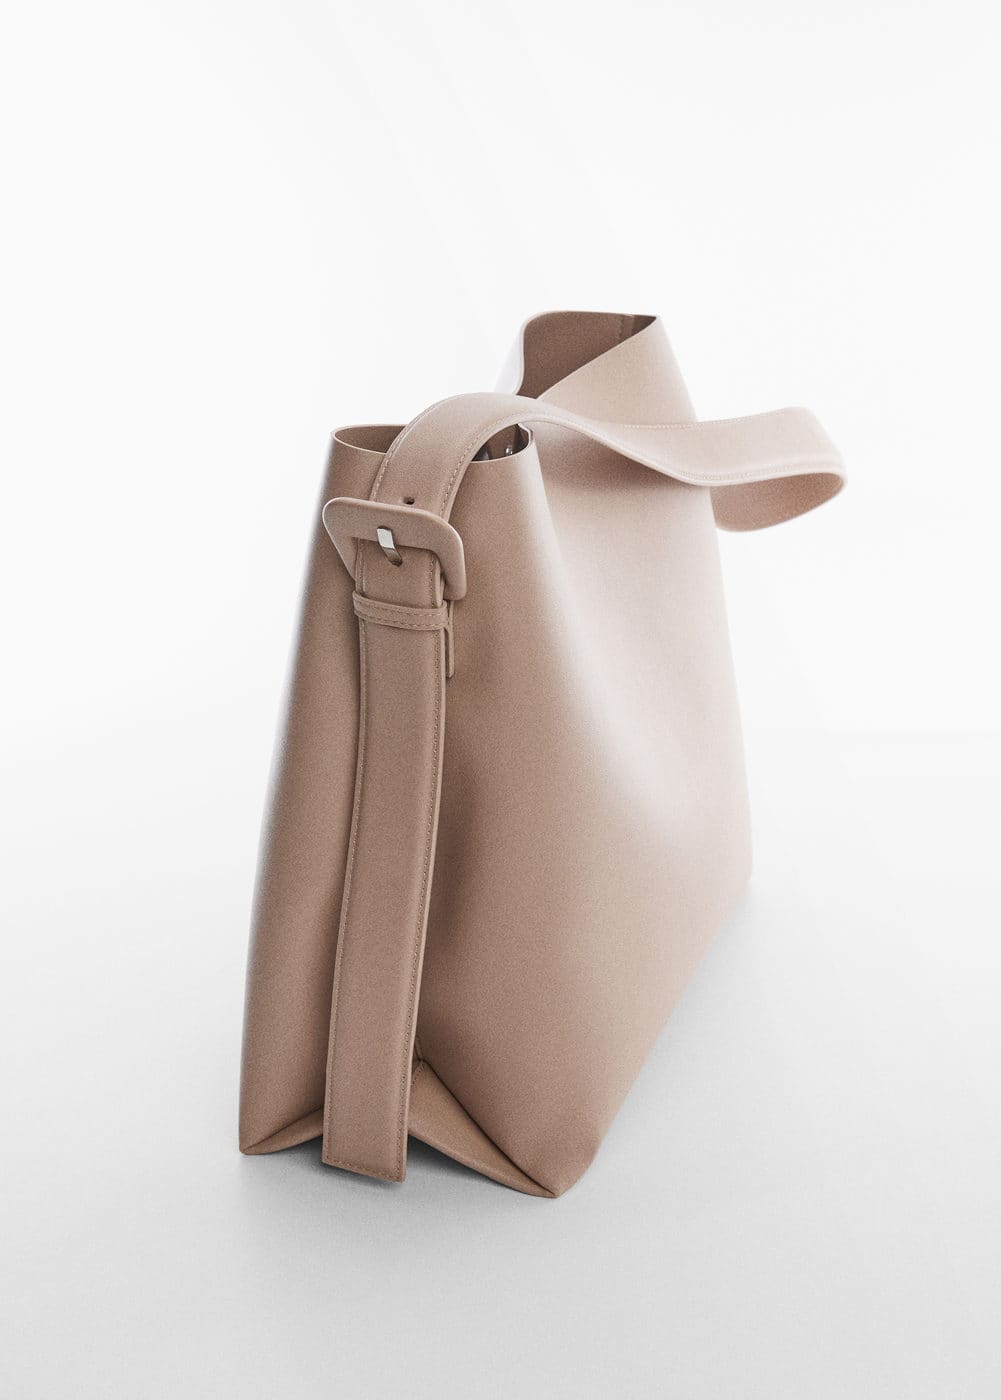 100+ affordable handbag preloved original leather For Sale, Bags &  Wallets